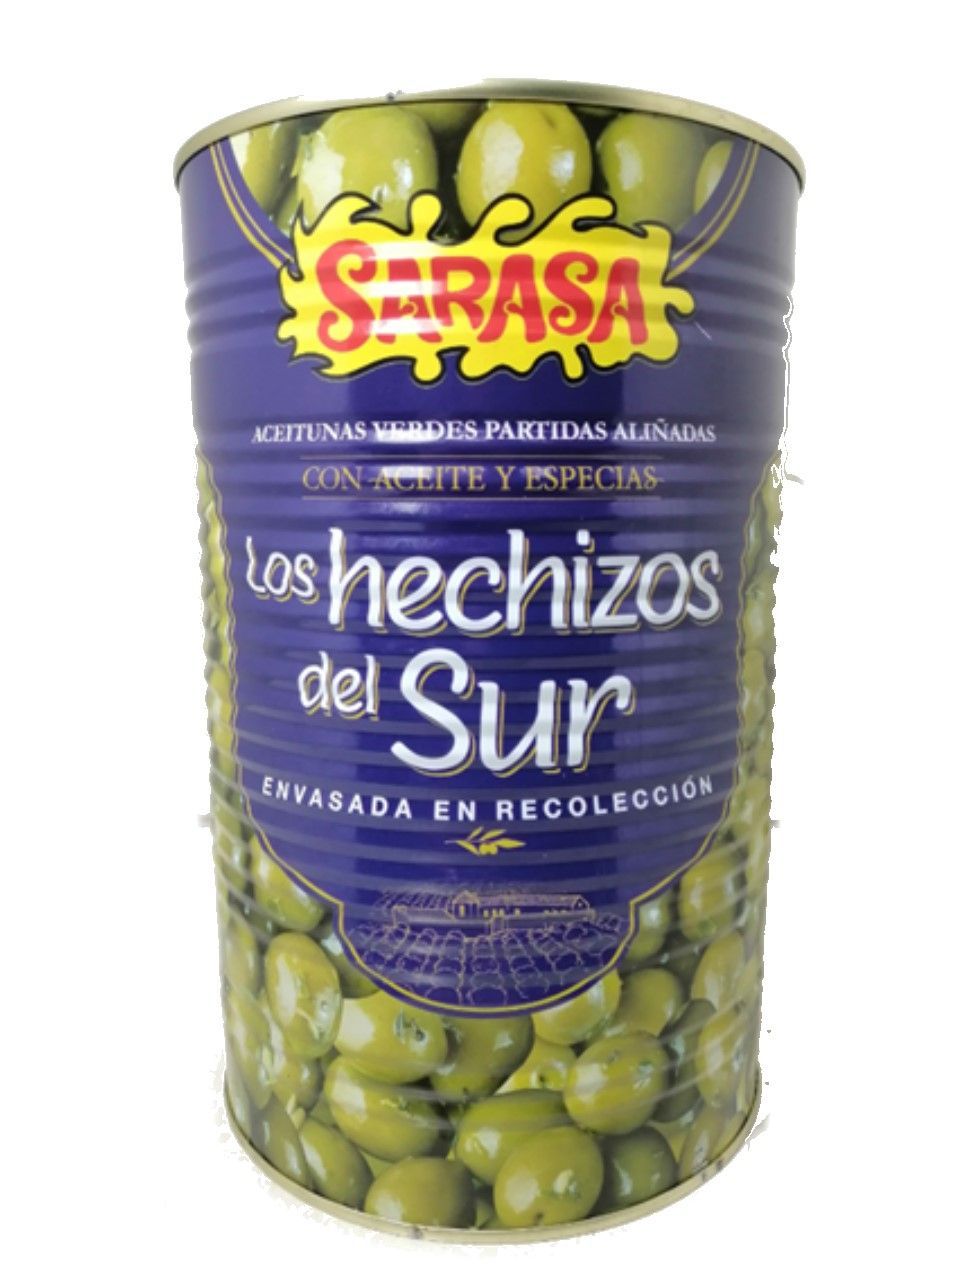 Оливки зеленые с косточкой "Эчисос дель сюр"(битые) 4,25 литра